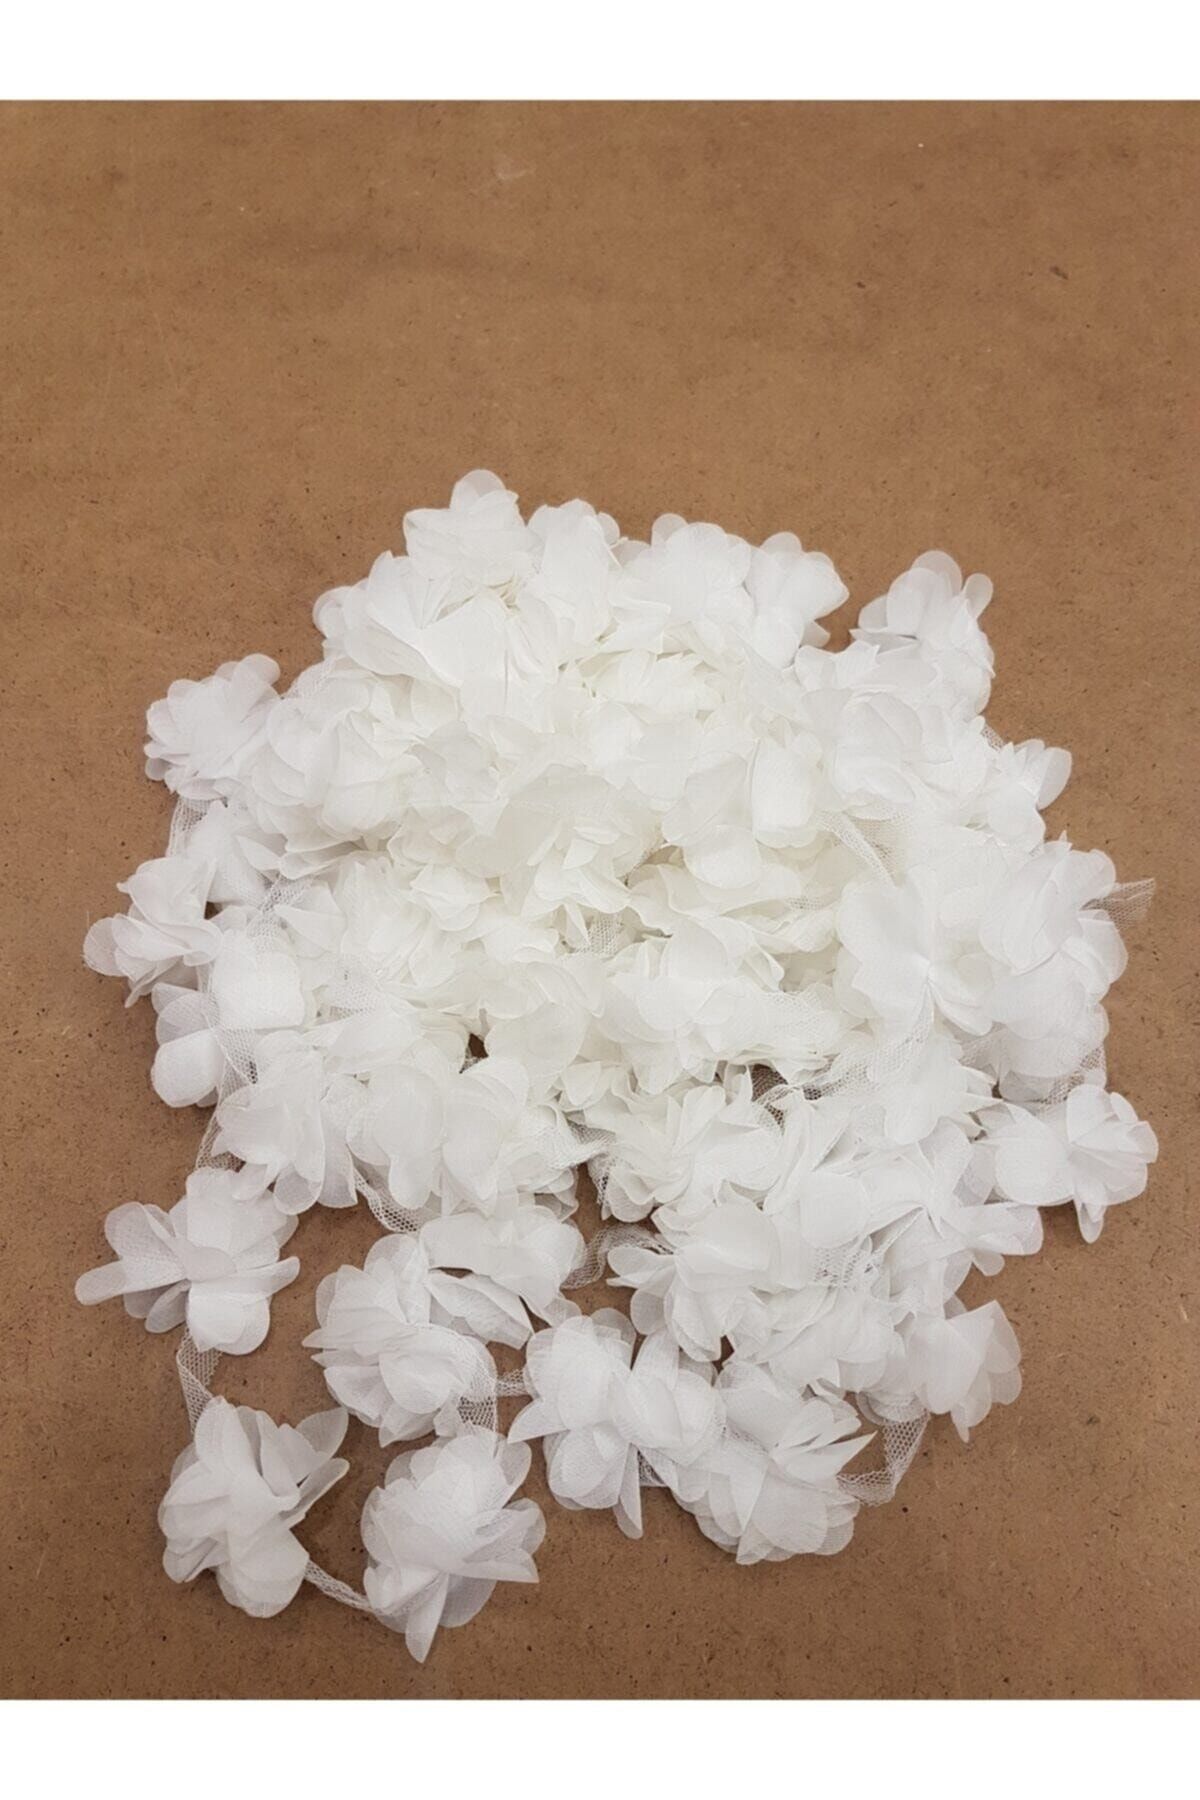 Aker Hediyelik Beyaz Lazer Gül 1m Lazer Kesim Gül Süsleme Paketleme Malzemesi 12 Adet Organze Kumaş Yapay Çiçekler